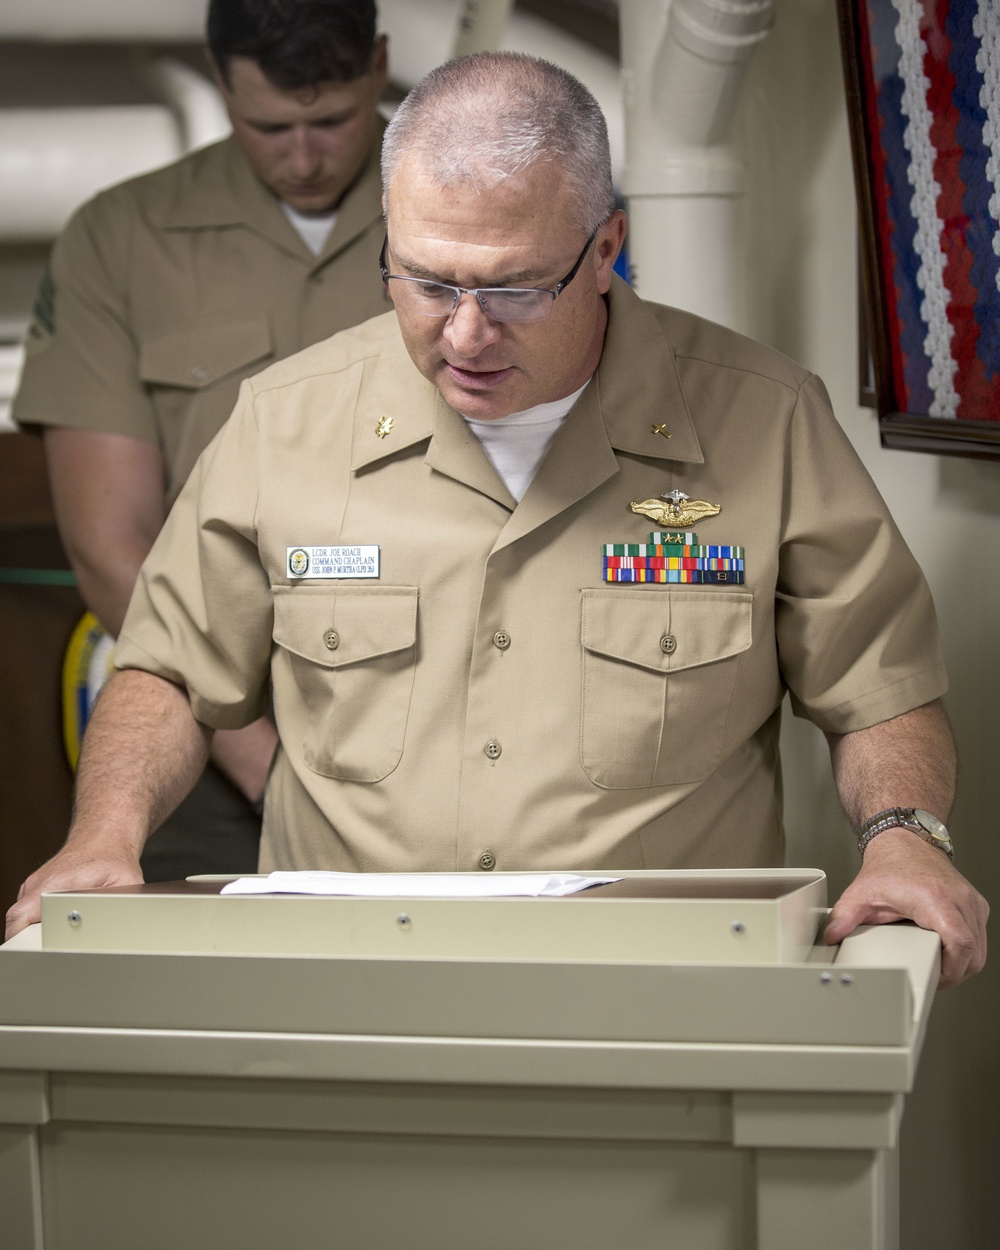 Lance Cpl. Seminar Graduation aboard USS John P. Murtha